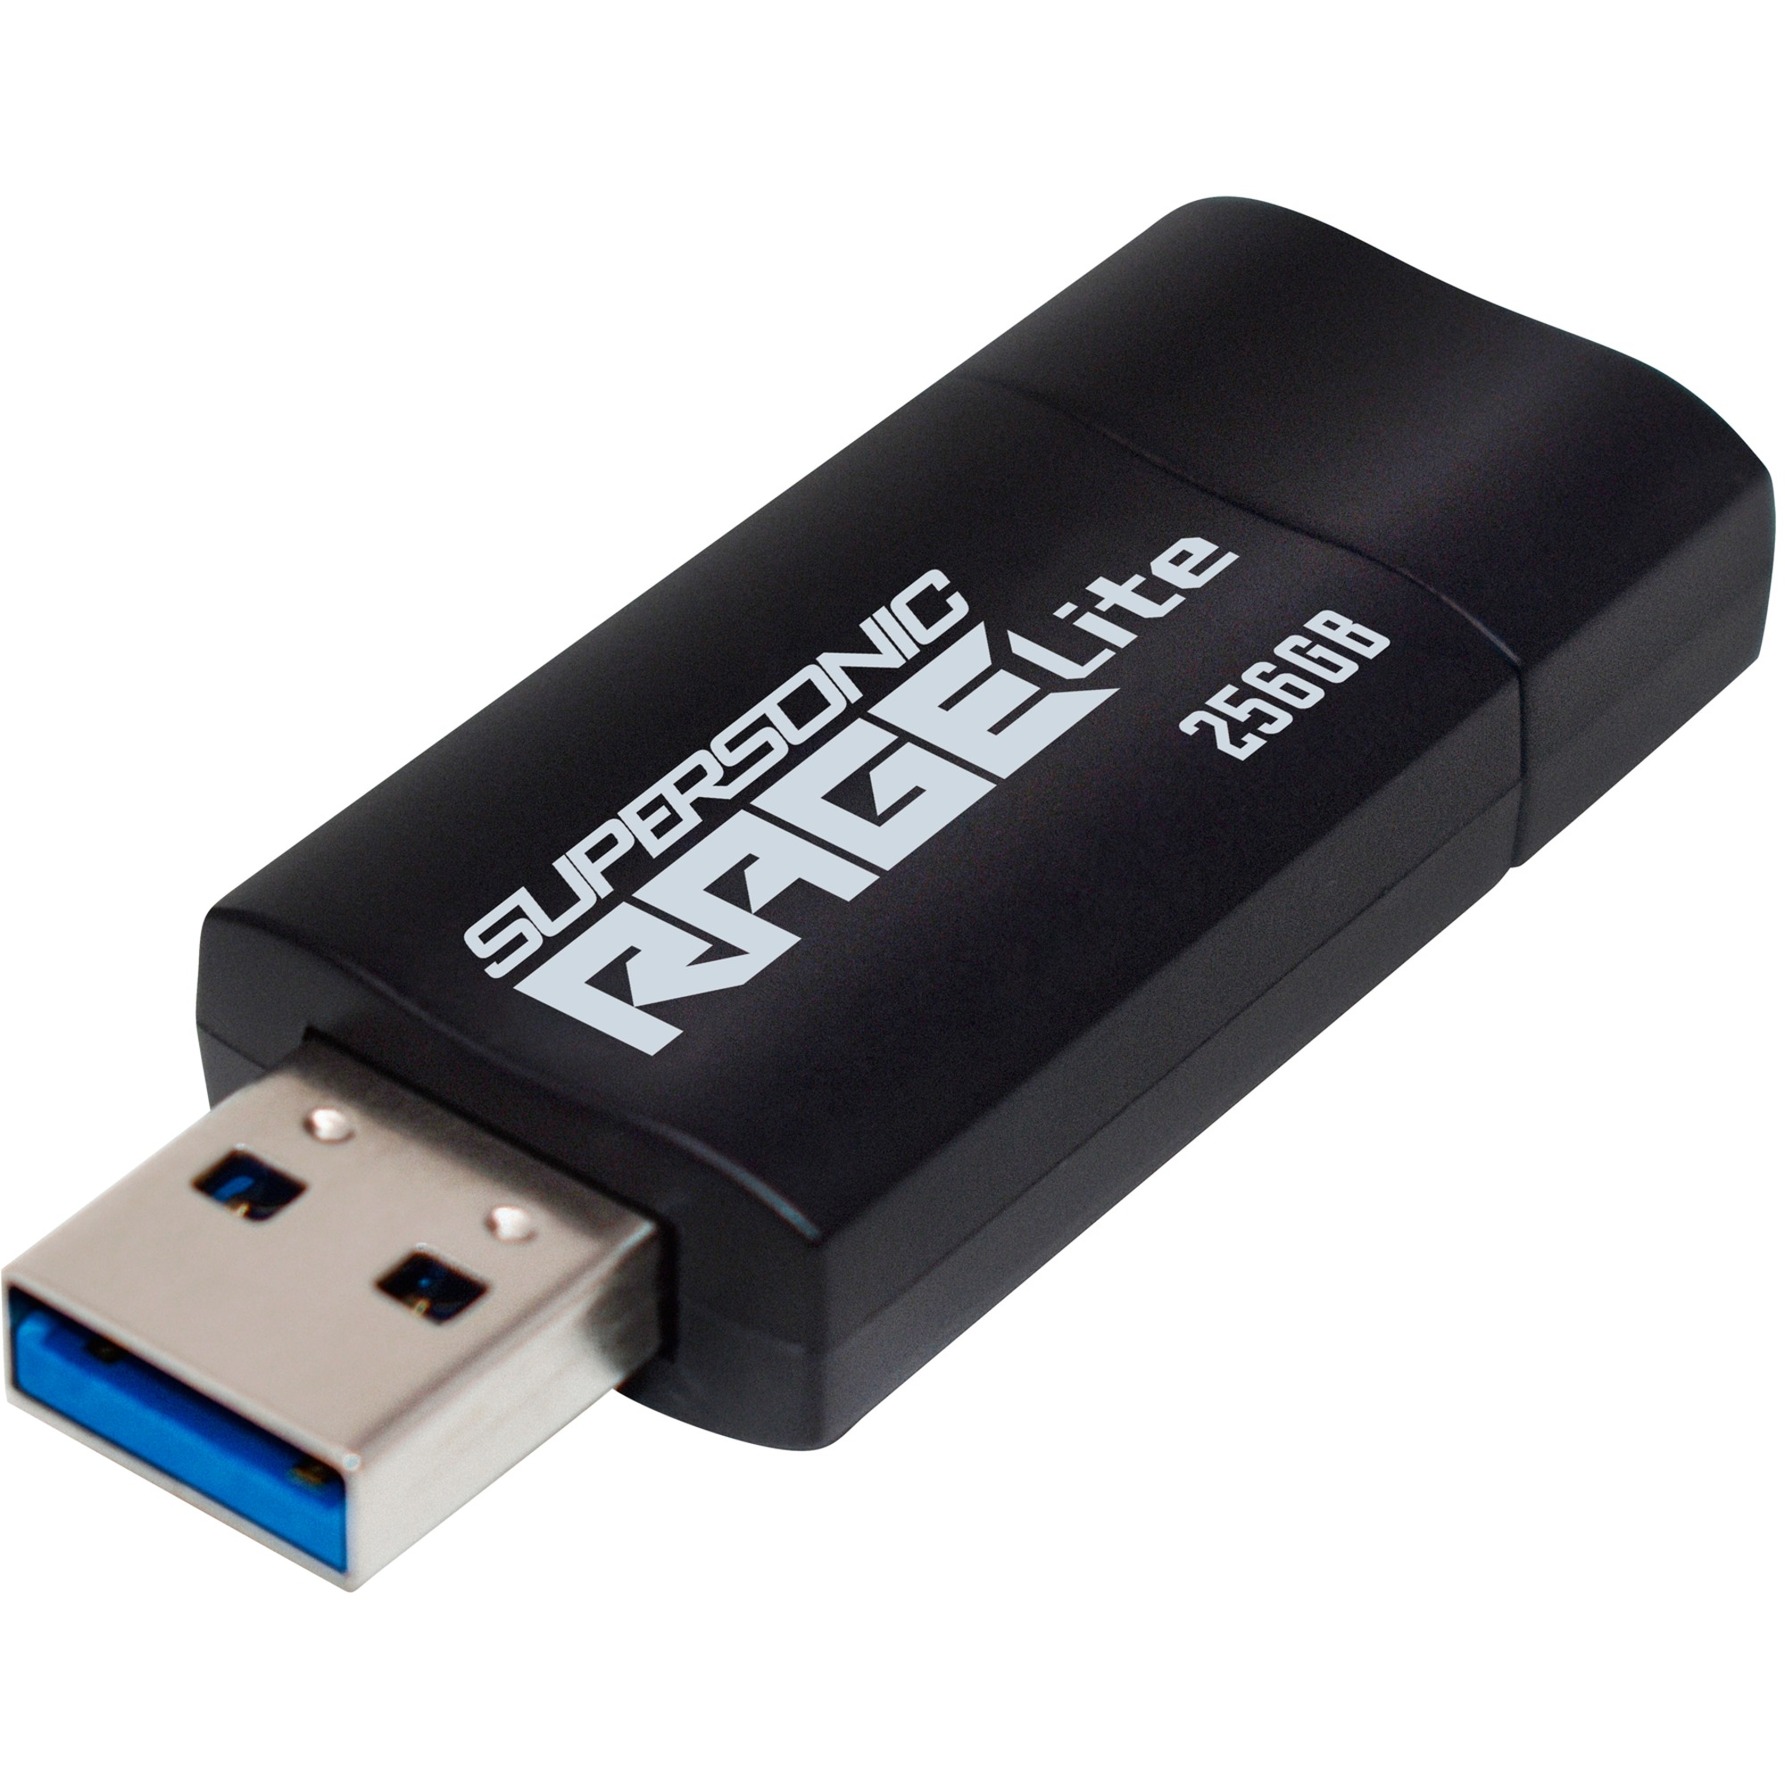 Supersonic Rage Lite 256 GB, USB-Stick von Patriot